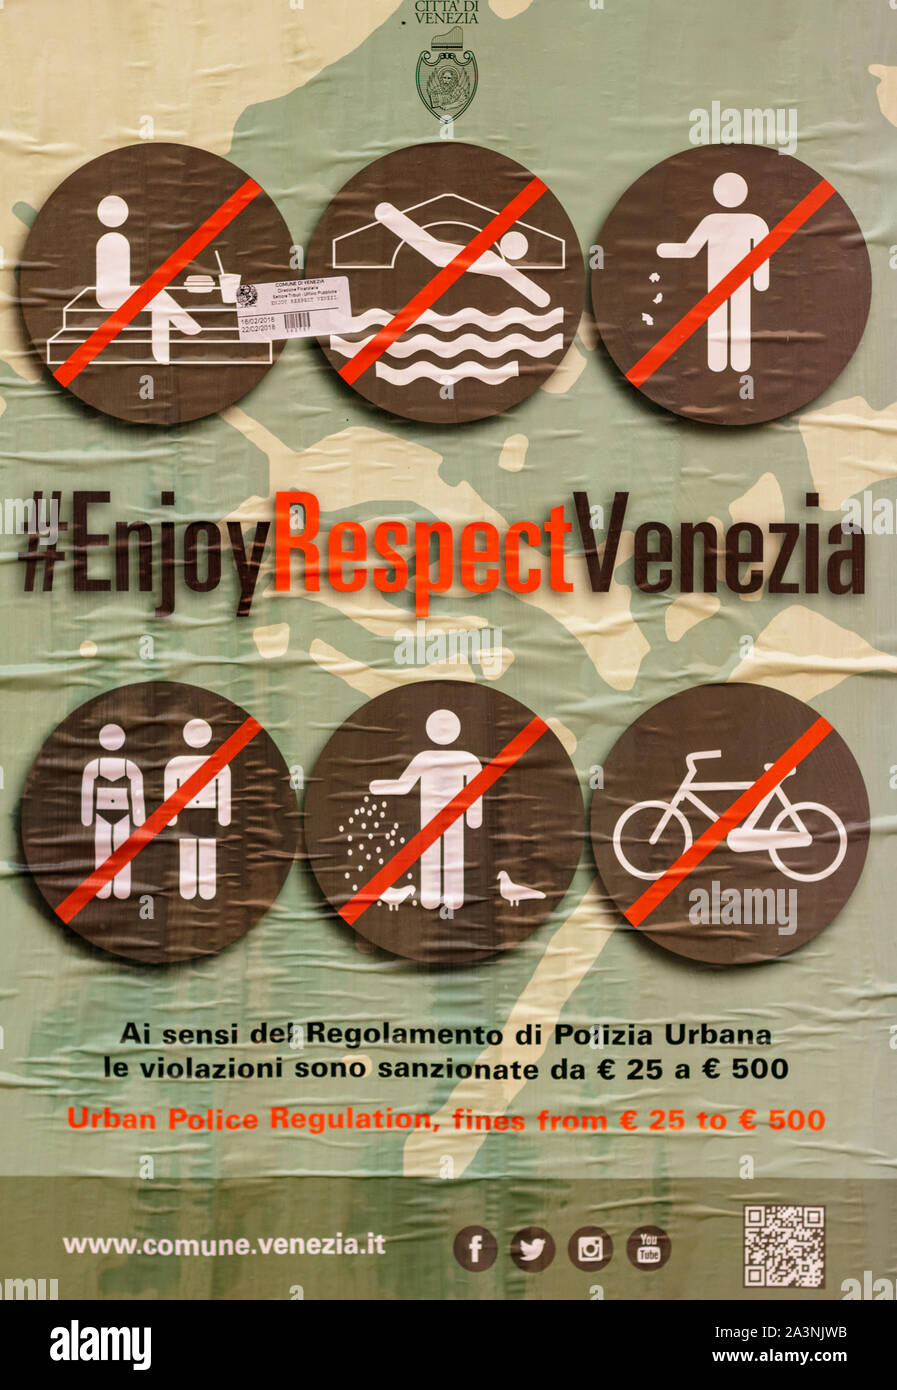 Venecia, Italia - 16 de febrero de 2018: disfrute de respeto Venezia información pública cartel en Venecia Italia Foto de stock